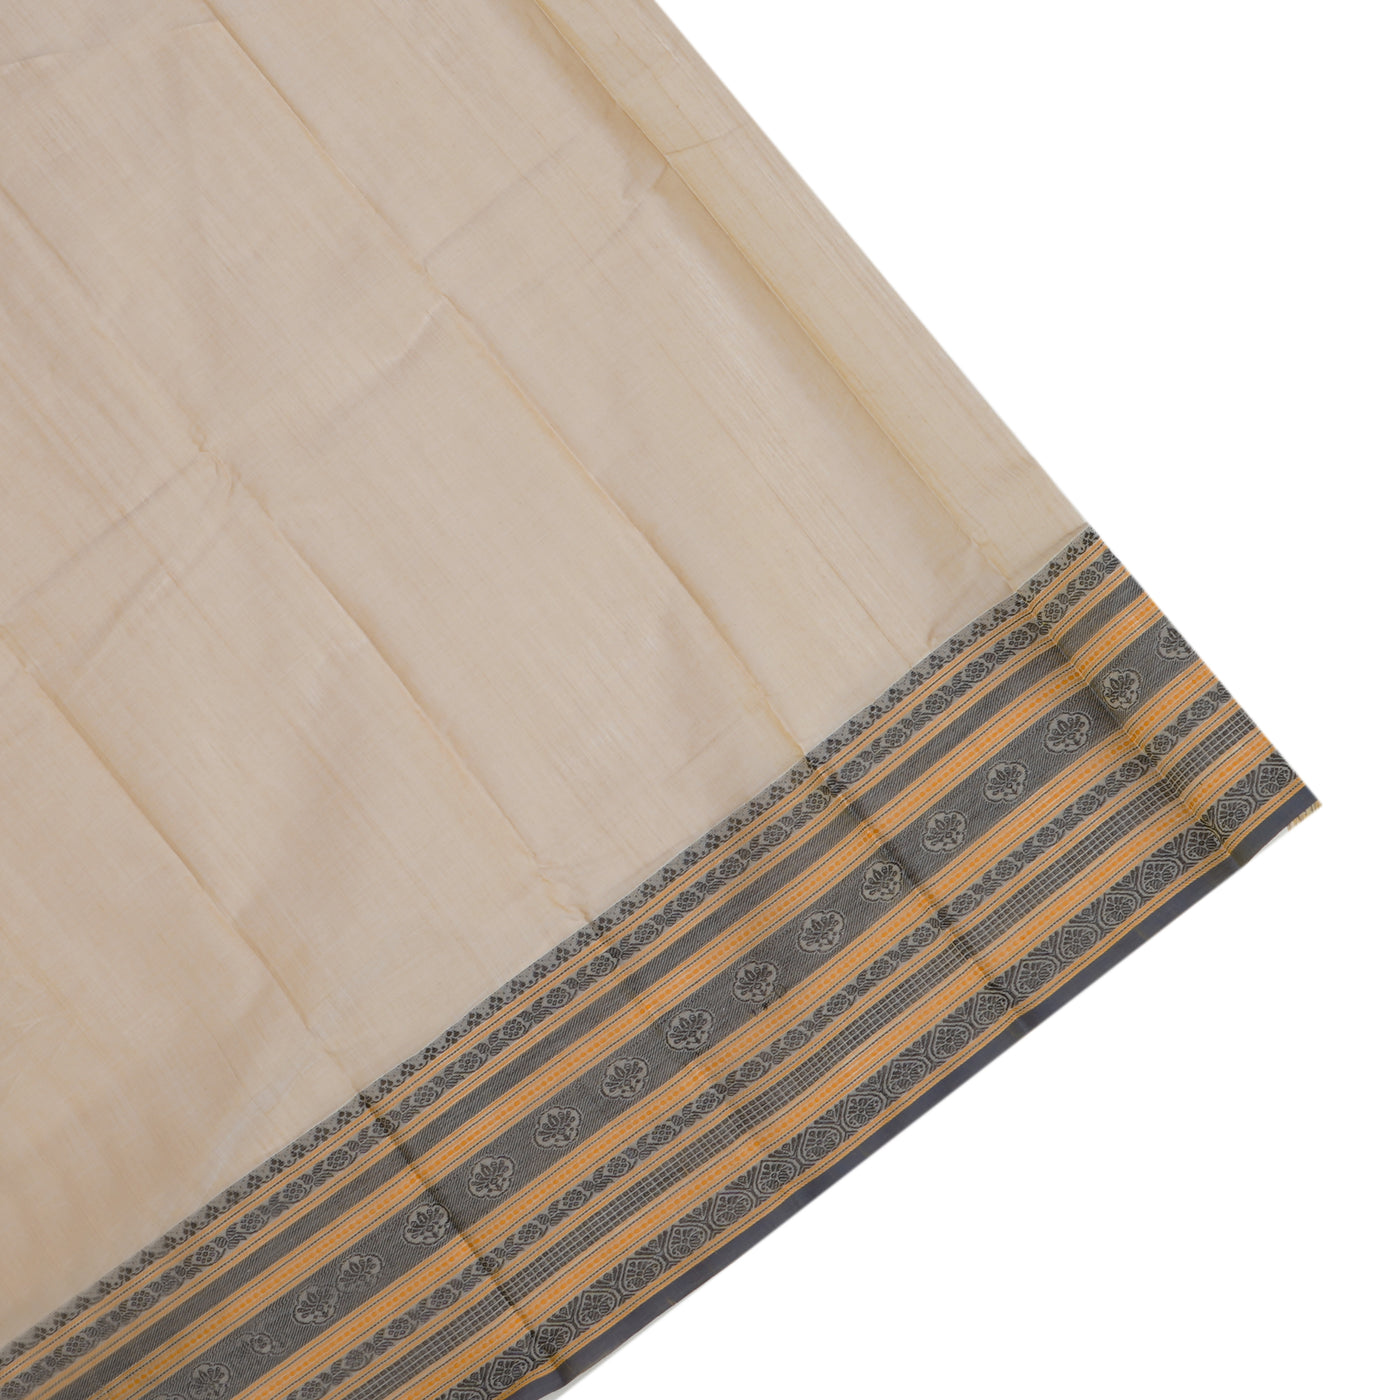 Off White Kanchi Cotton Saree with Small Butta Design